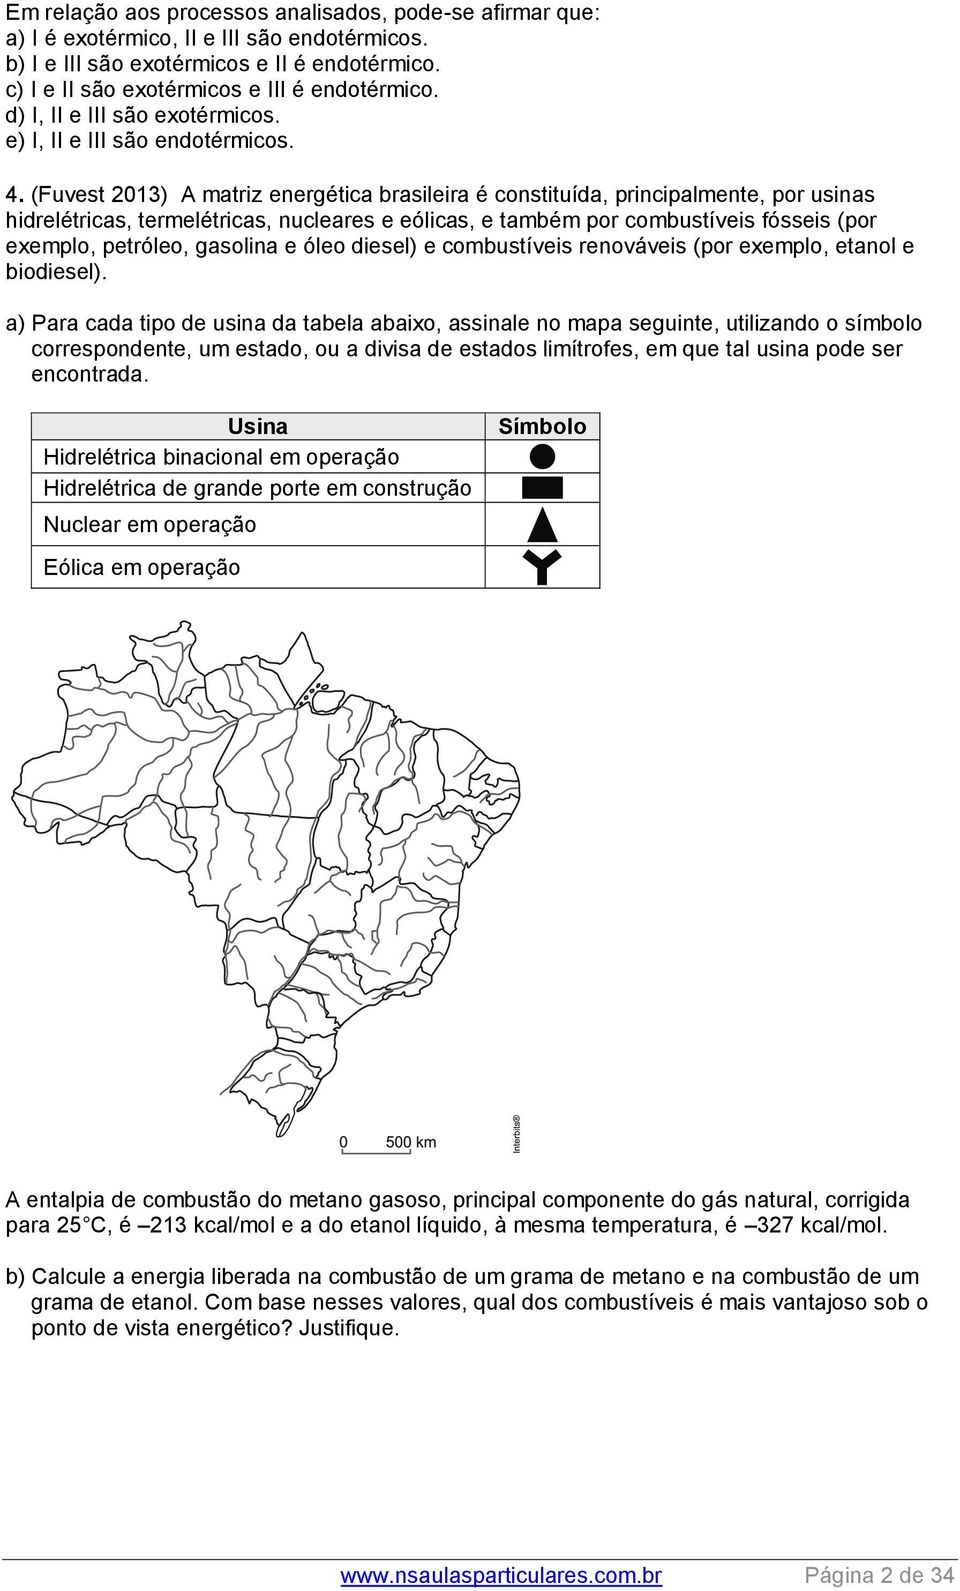 (Fuvest 013) A matriz energética brasileira é constituída, principalmente, por usinas hidrelétricas, termelétricas, nucleares e eólicas, e também por combustíveis fósseis (por exemplo, petróleo,